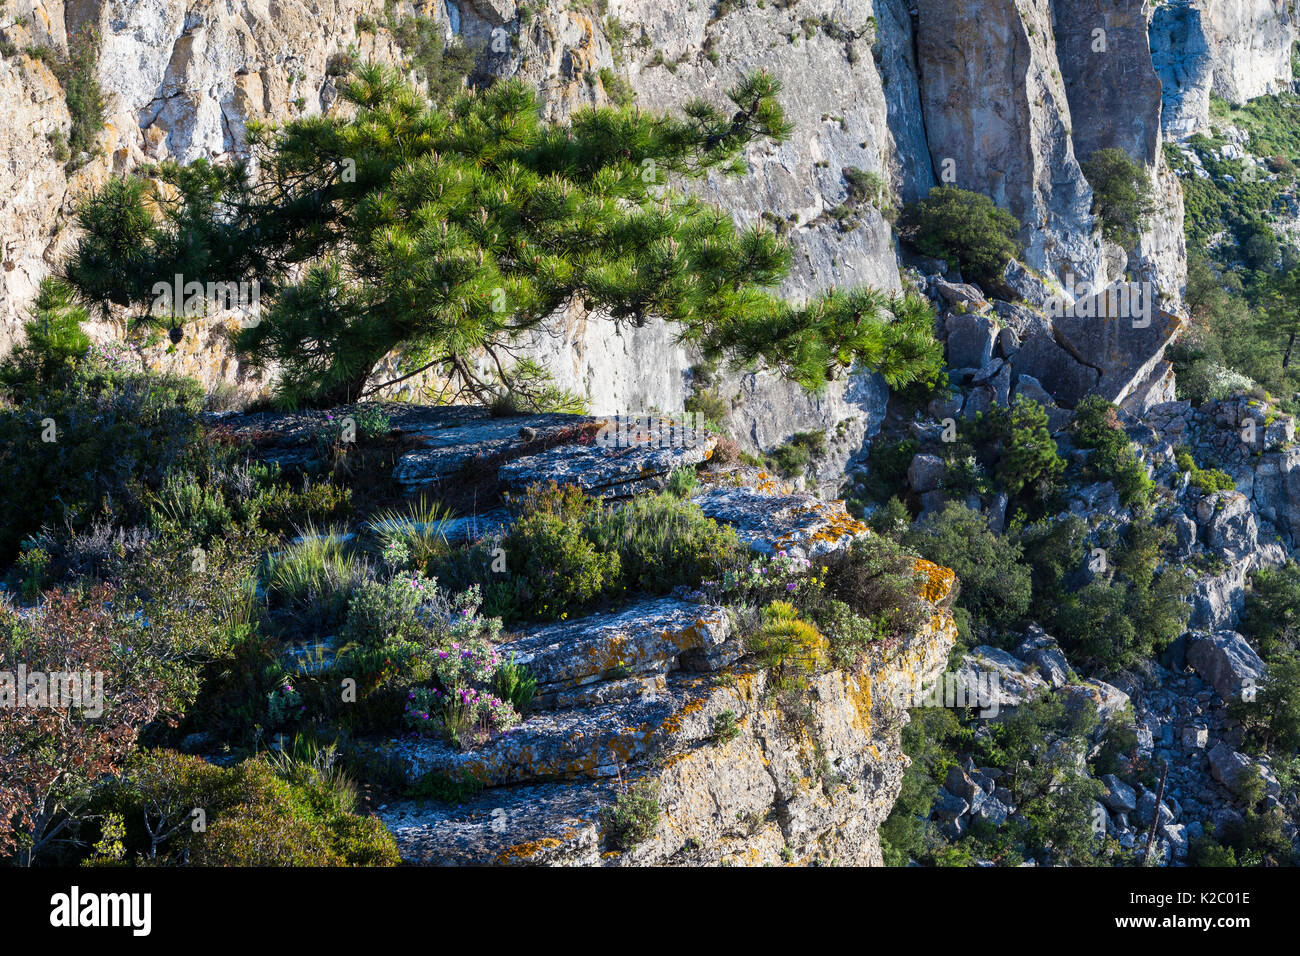 Europäische schwarze Kiefer (Pinus nigra) auf Felsen wachsen, Pradell-La Argentera Mountain Range Bereich der natürlichen Interesse, Tarragona, Katalonien, Spanien, Mai 2013. Stockfoto